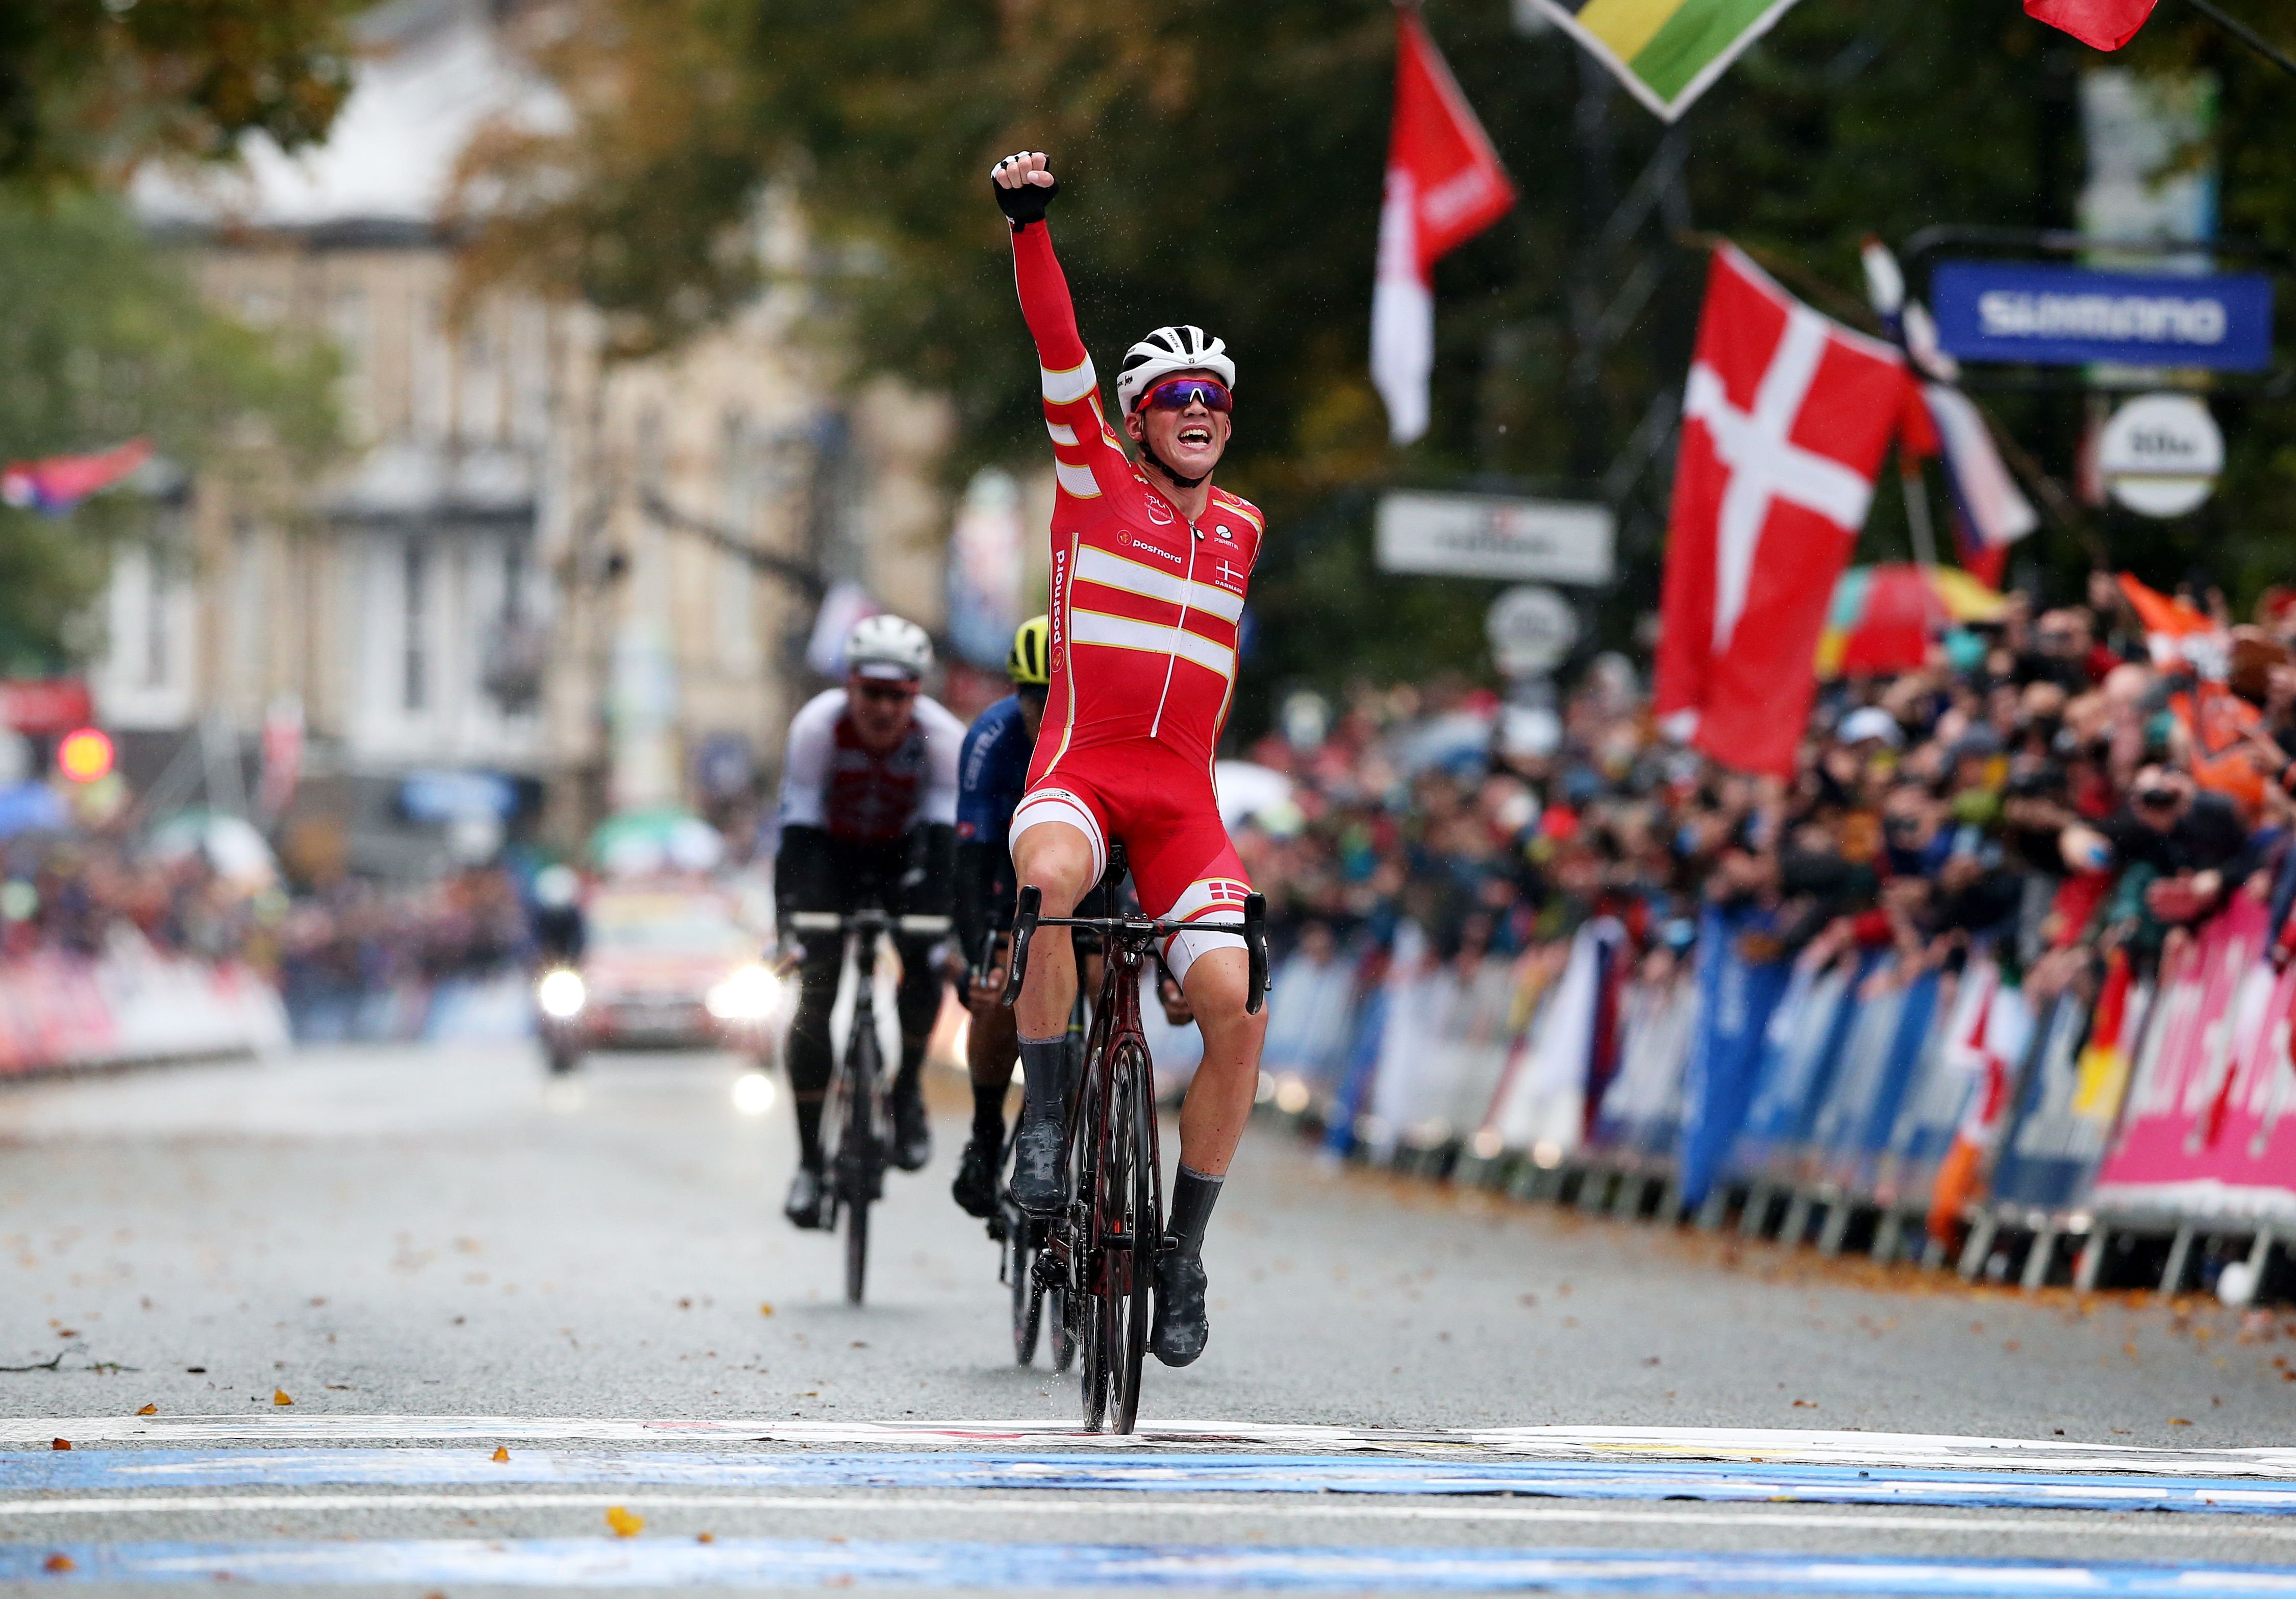 Pedersen es de oro y da el primer Mundial de ciclismo a Dinamarca